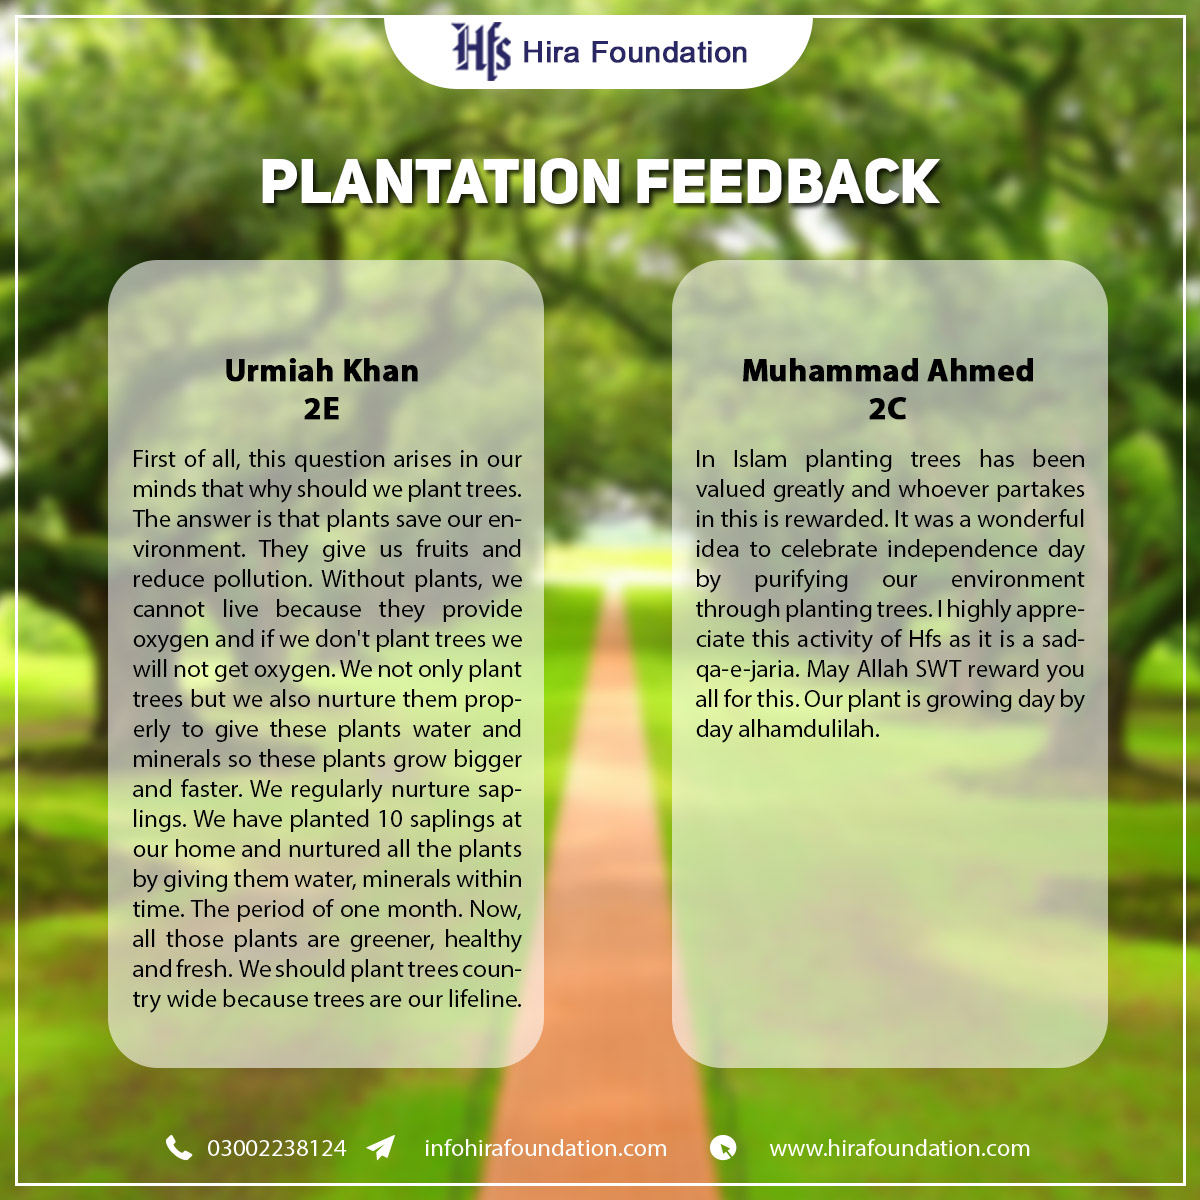 Plantation feedback